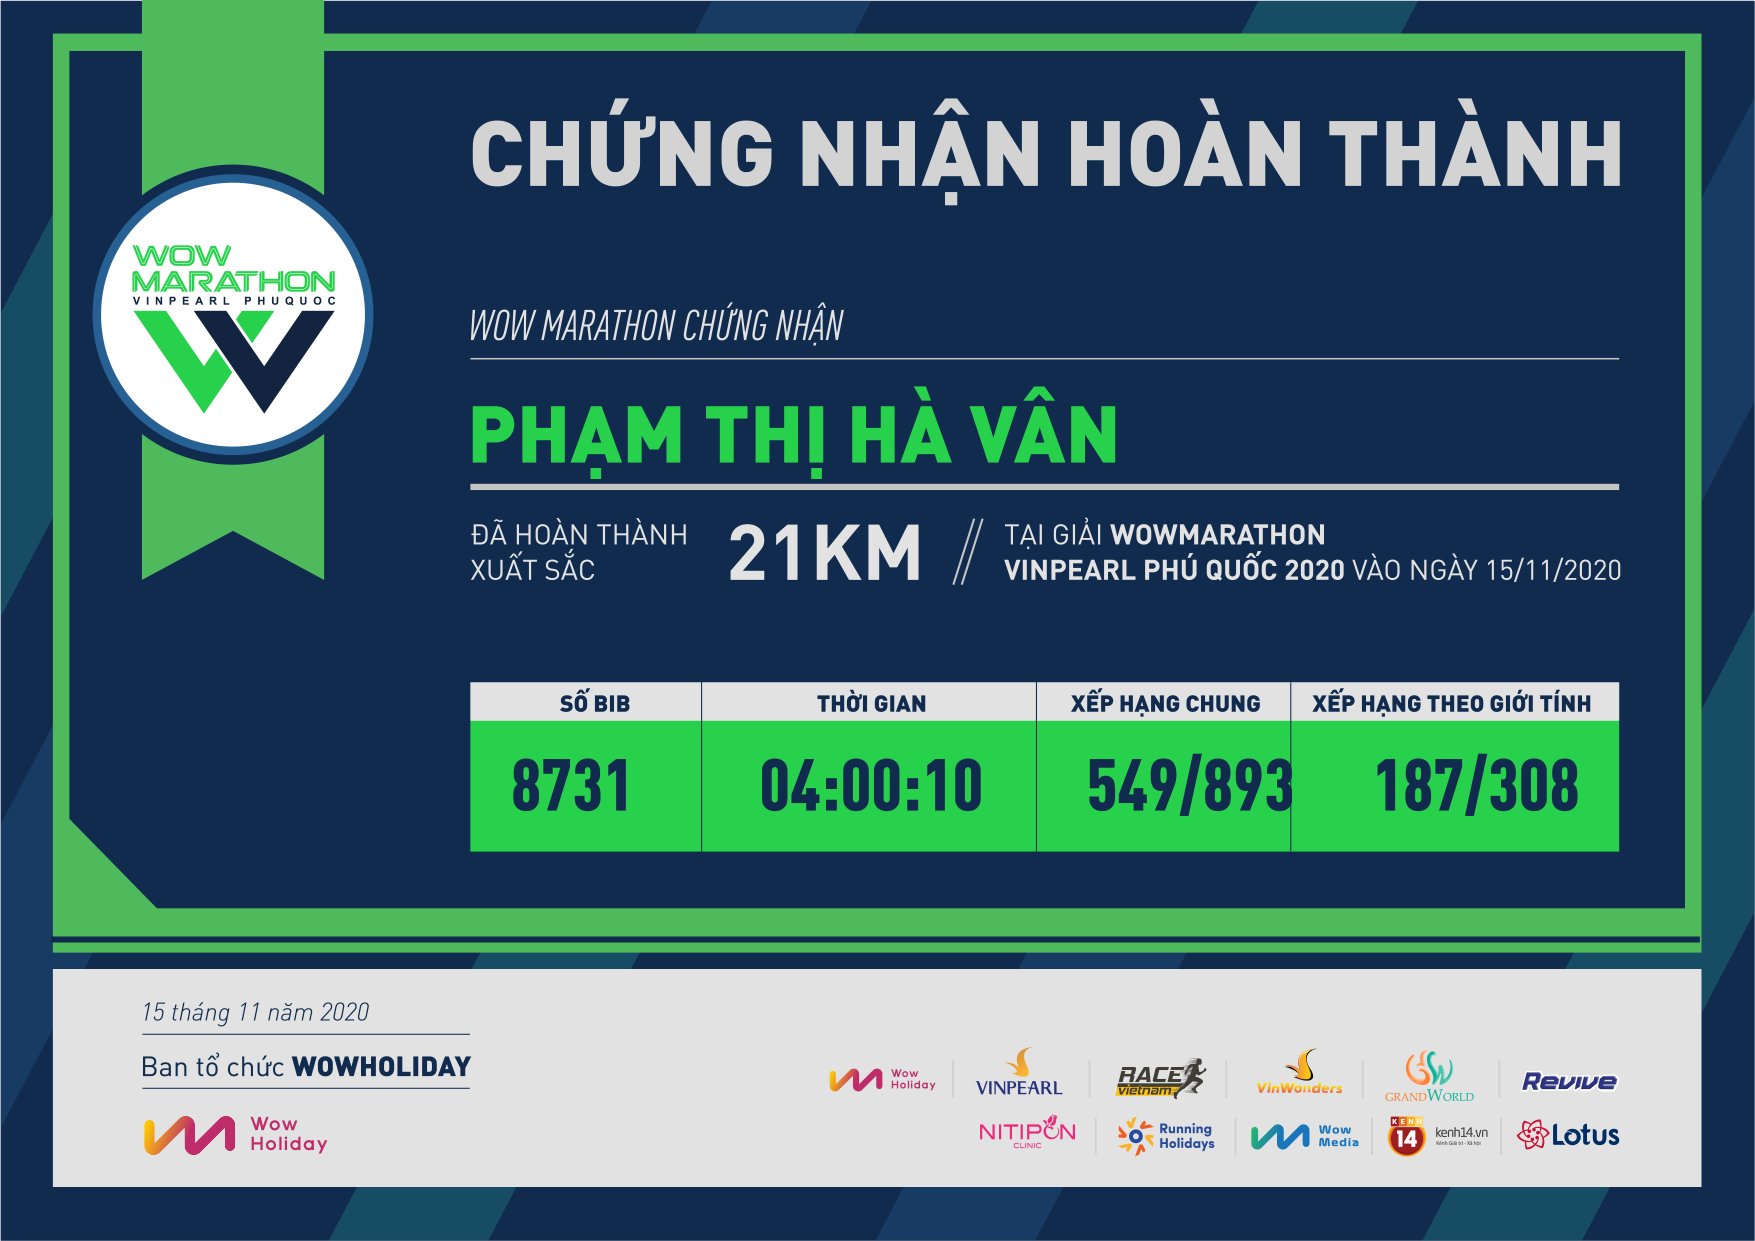 8731 - Phạm Thị Hà Vân